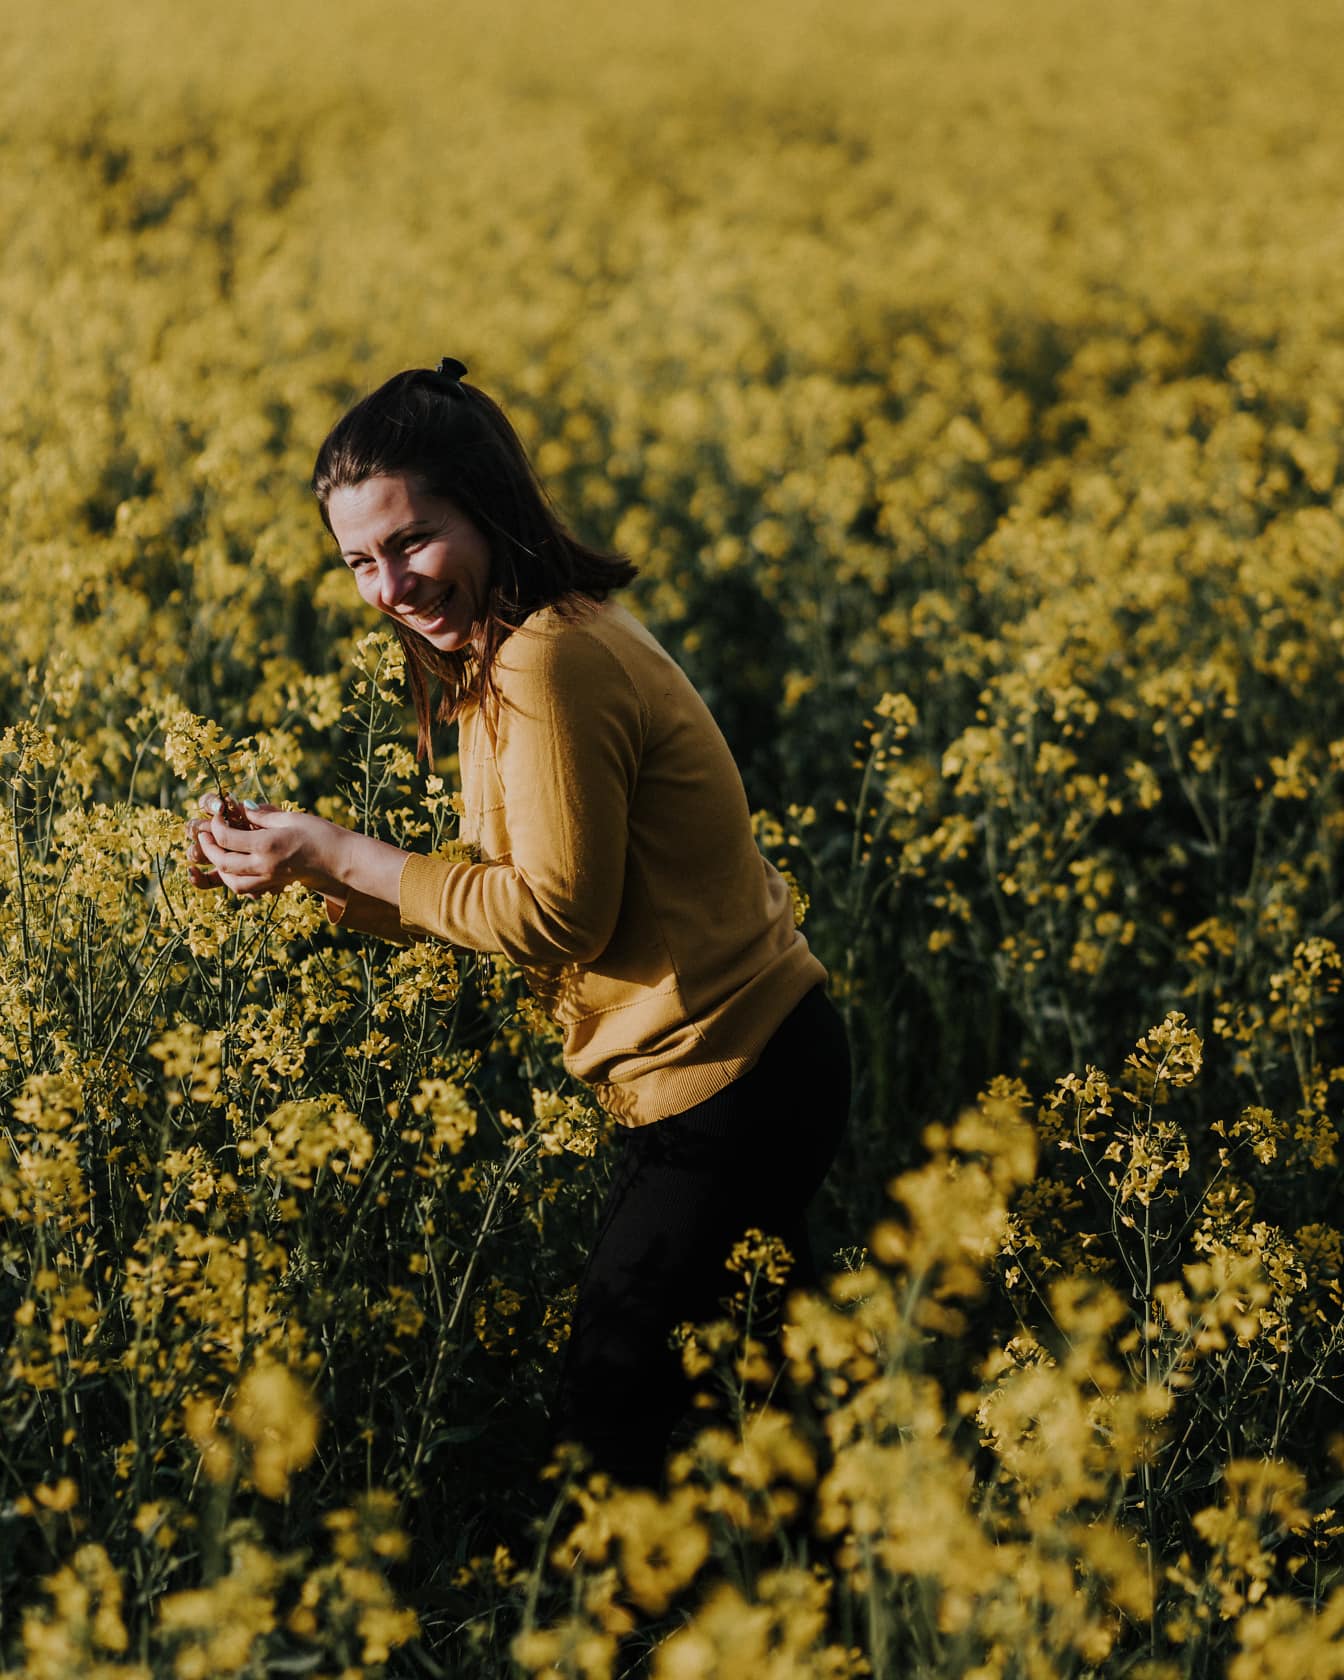 Femeie brunetă zâmbitoare stând într-un câmp de rapiță cu flori galbene